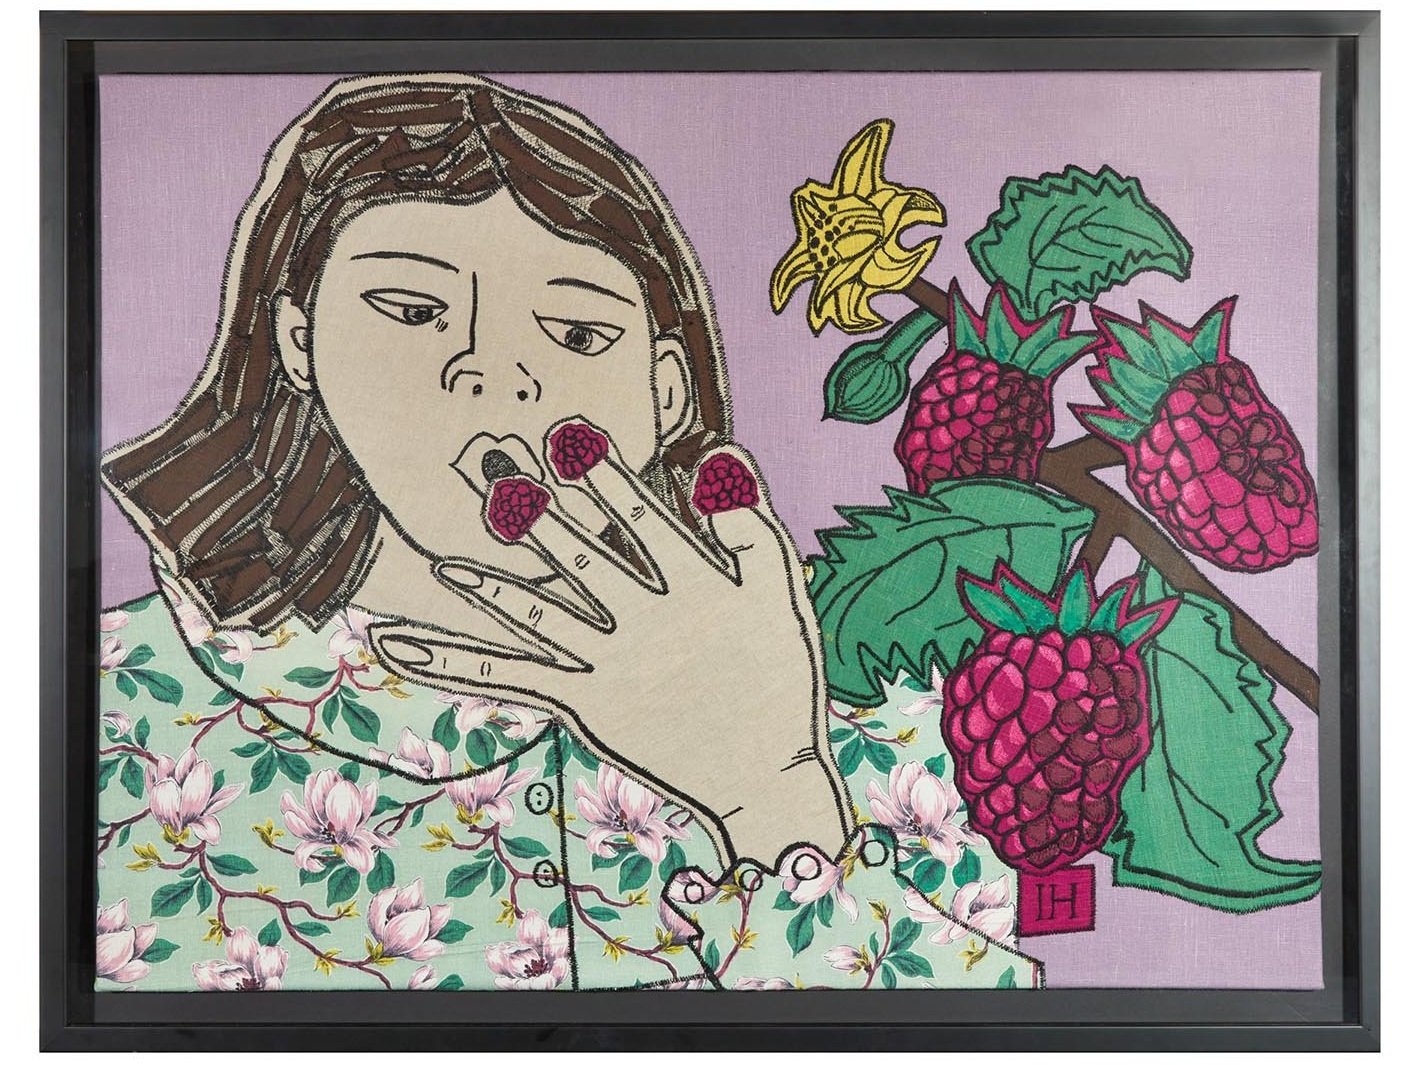 011-Girl-Eating-Raspberies-102x132cm-Framed.jpg